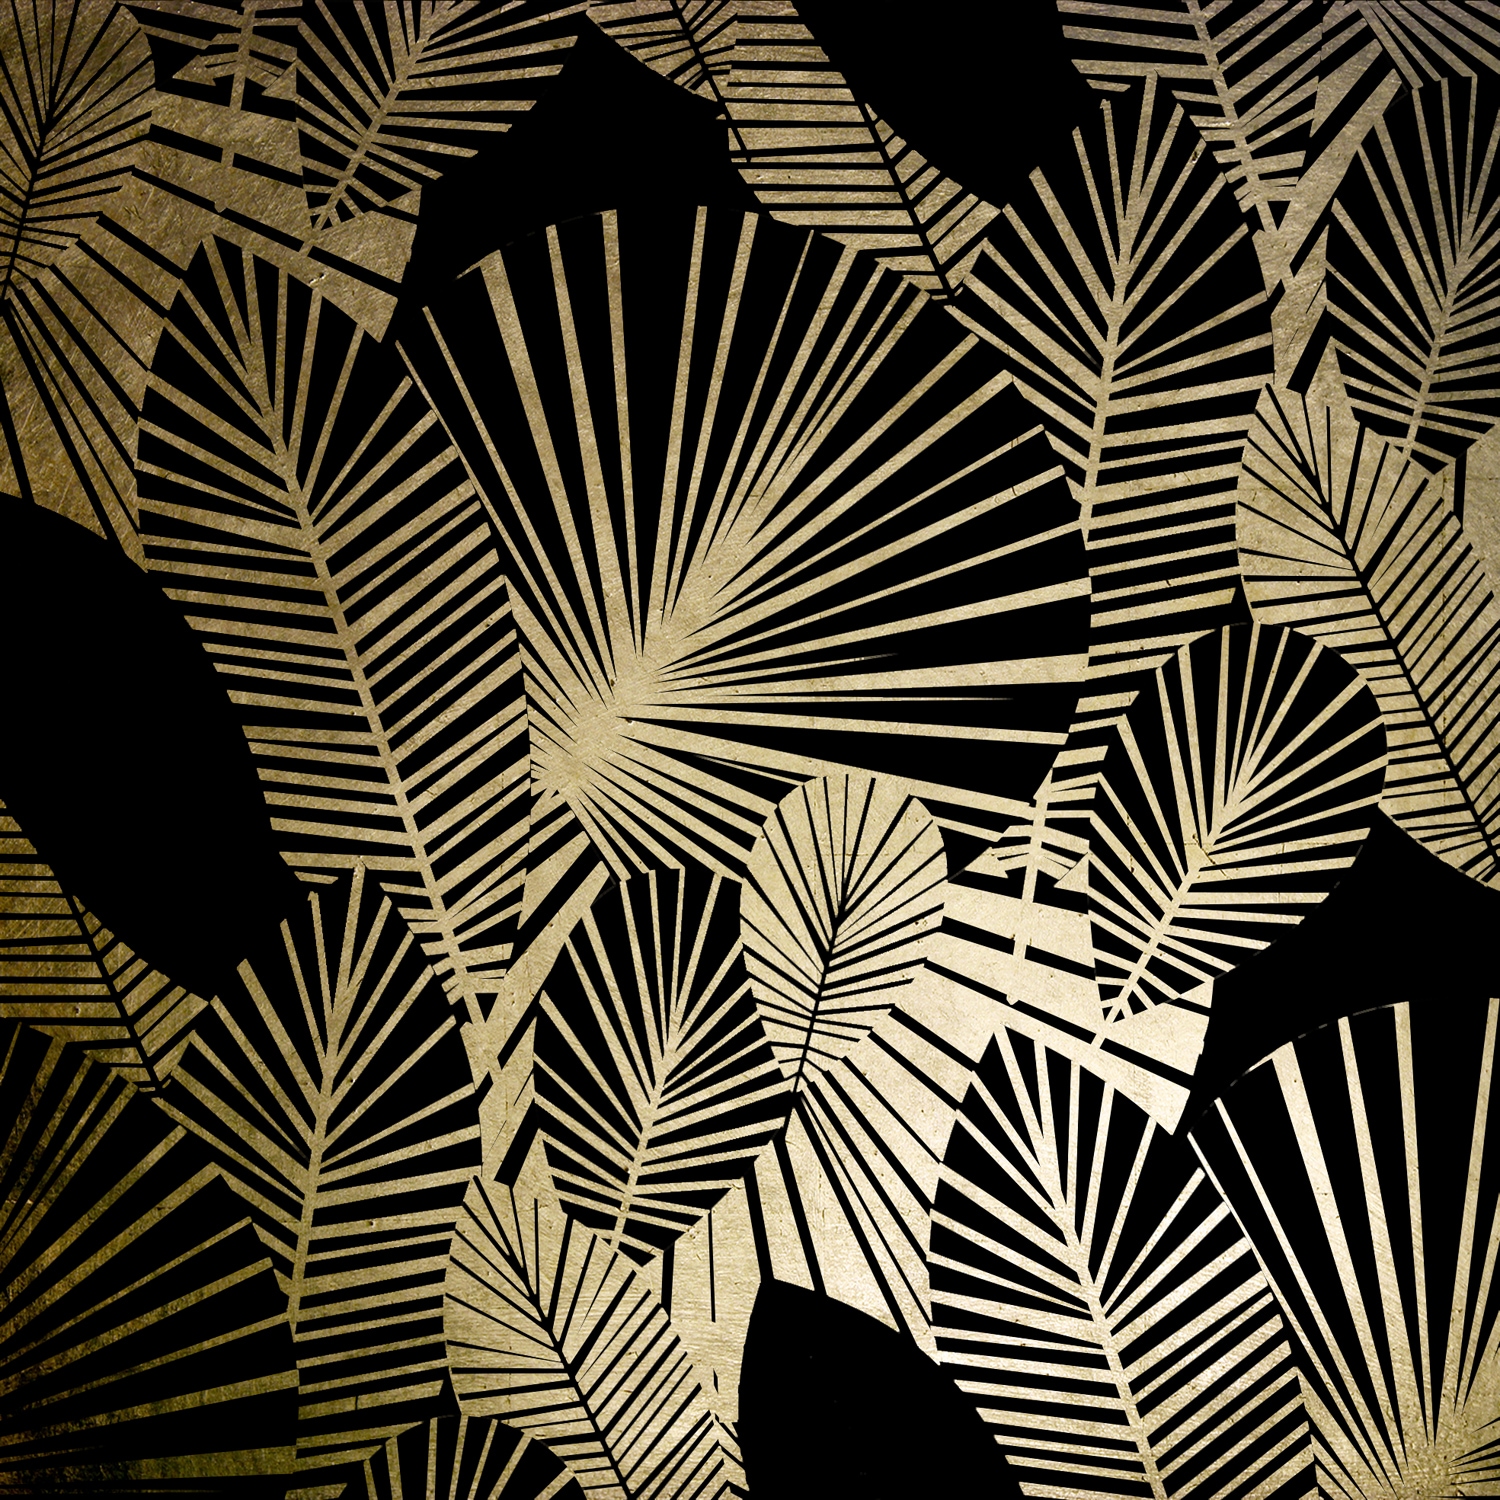 Leonique Acrylglasbild »Blätter - Acrylbilder mit Blattgold veredelt«, Blätter, (1 St.) von Leonique